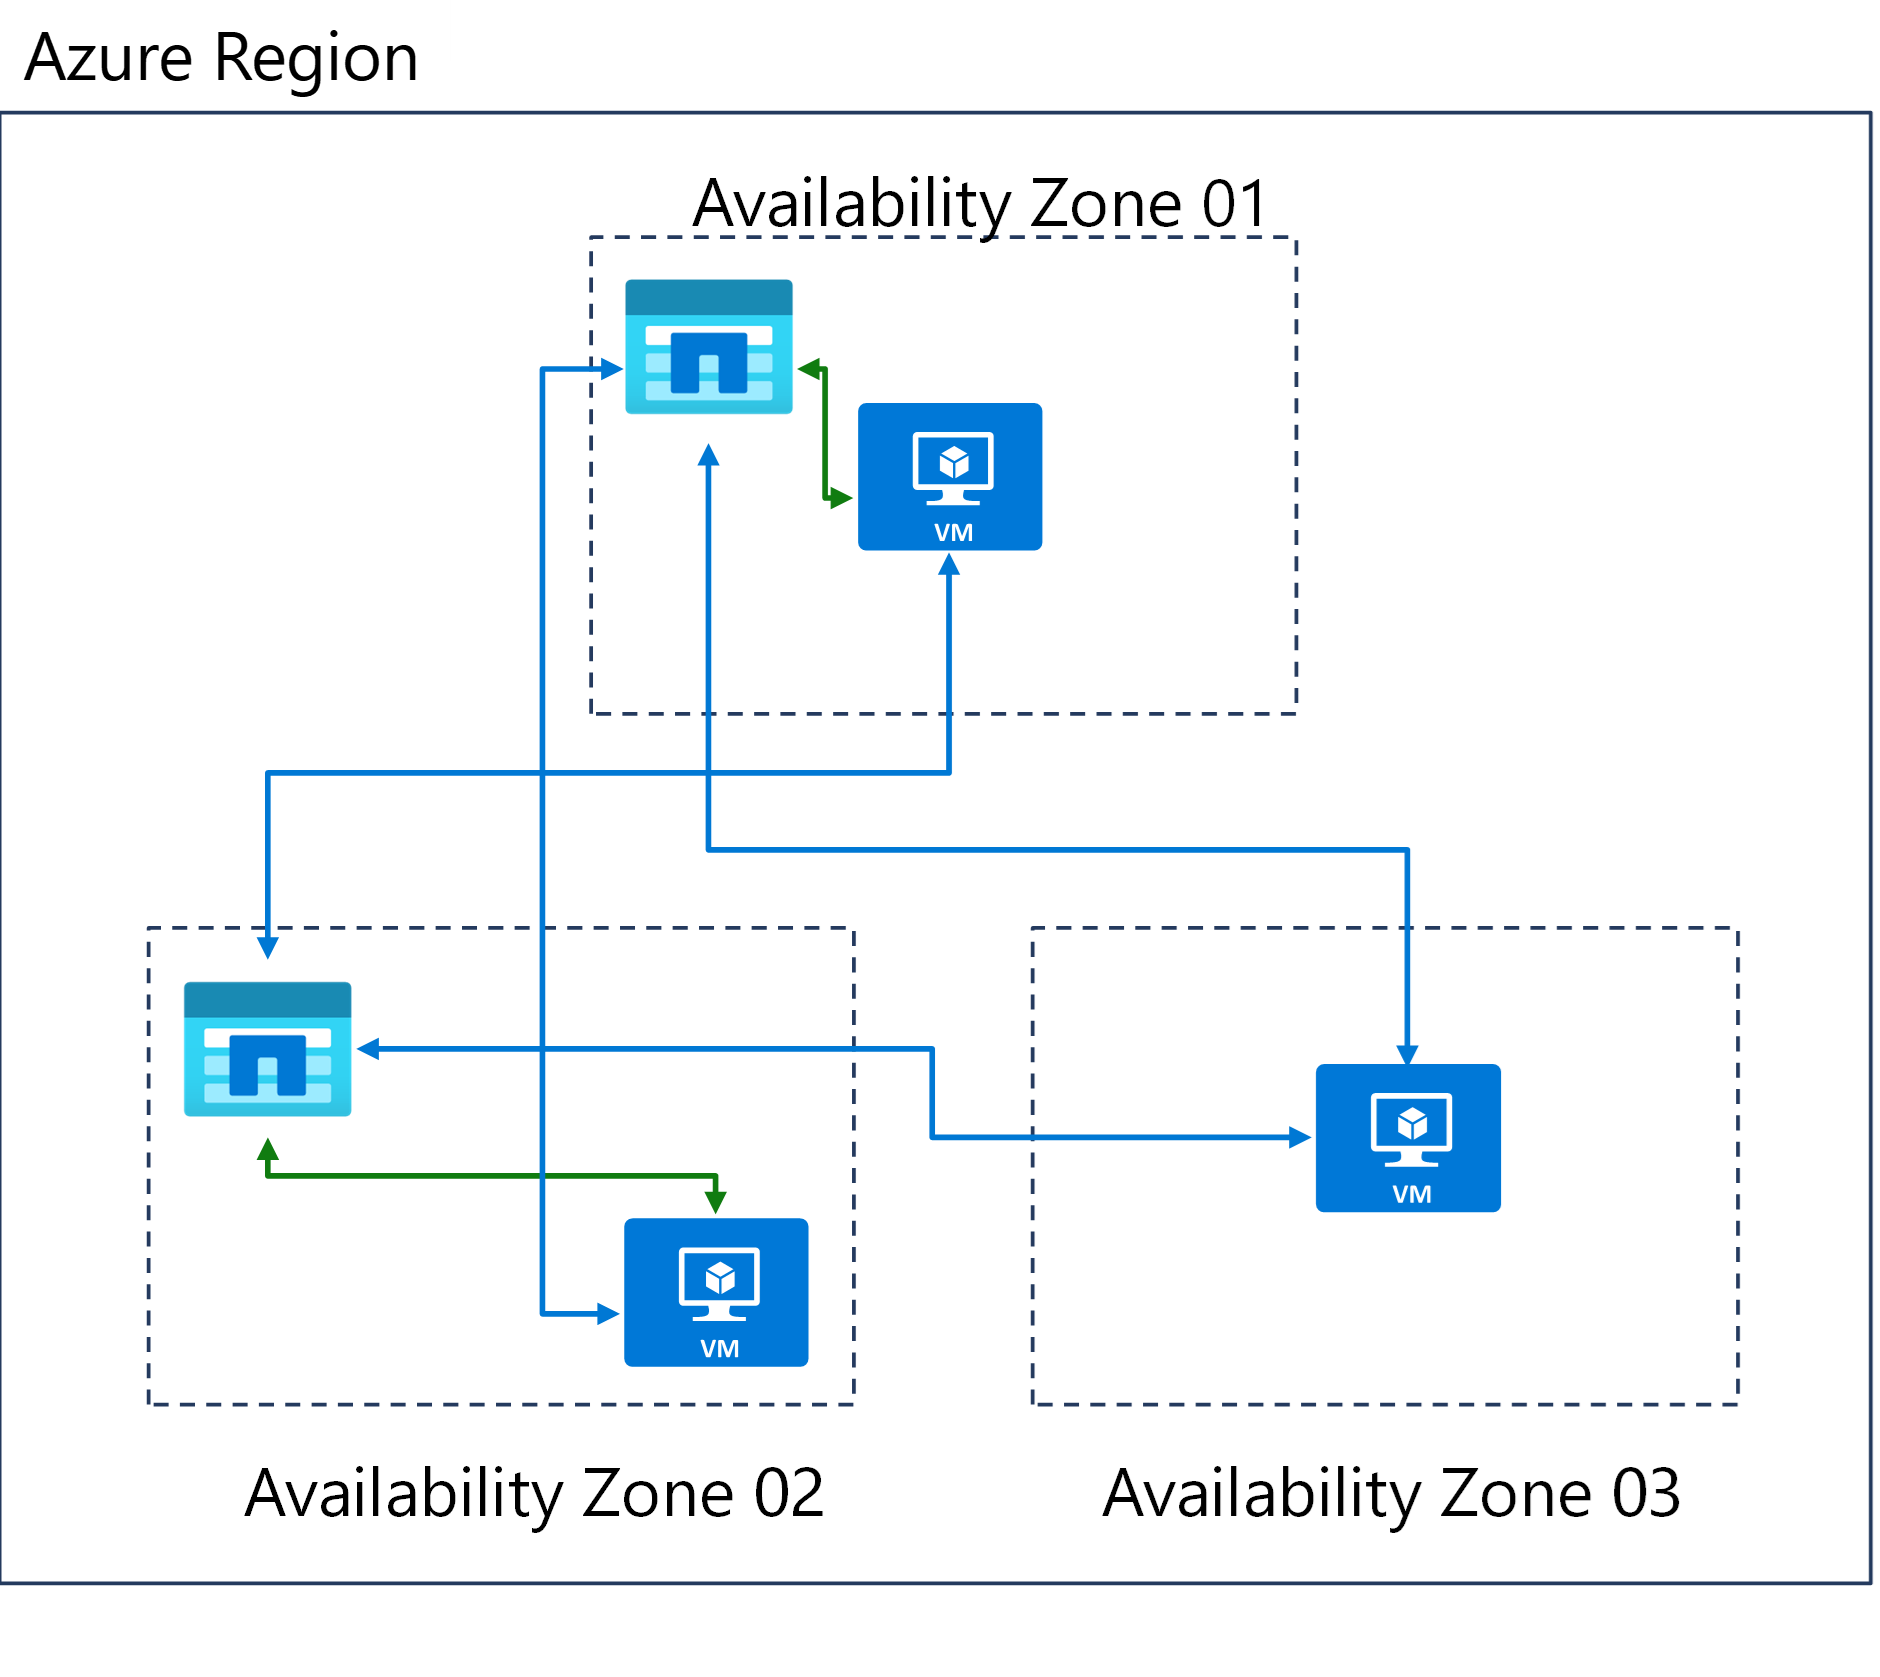 Diagramm von drei Verfügbarkeitszonen in einer Azure-Region.